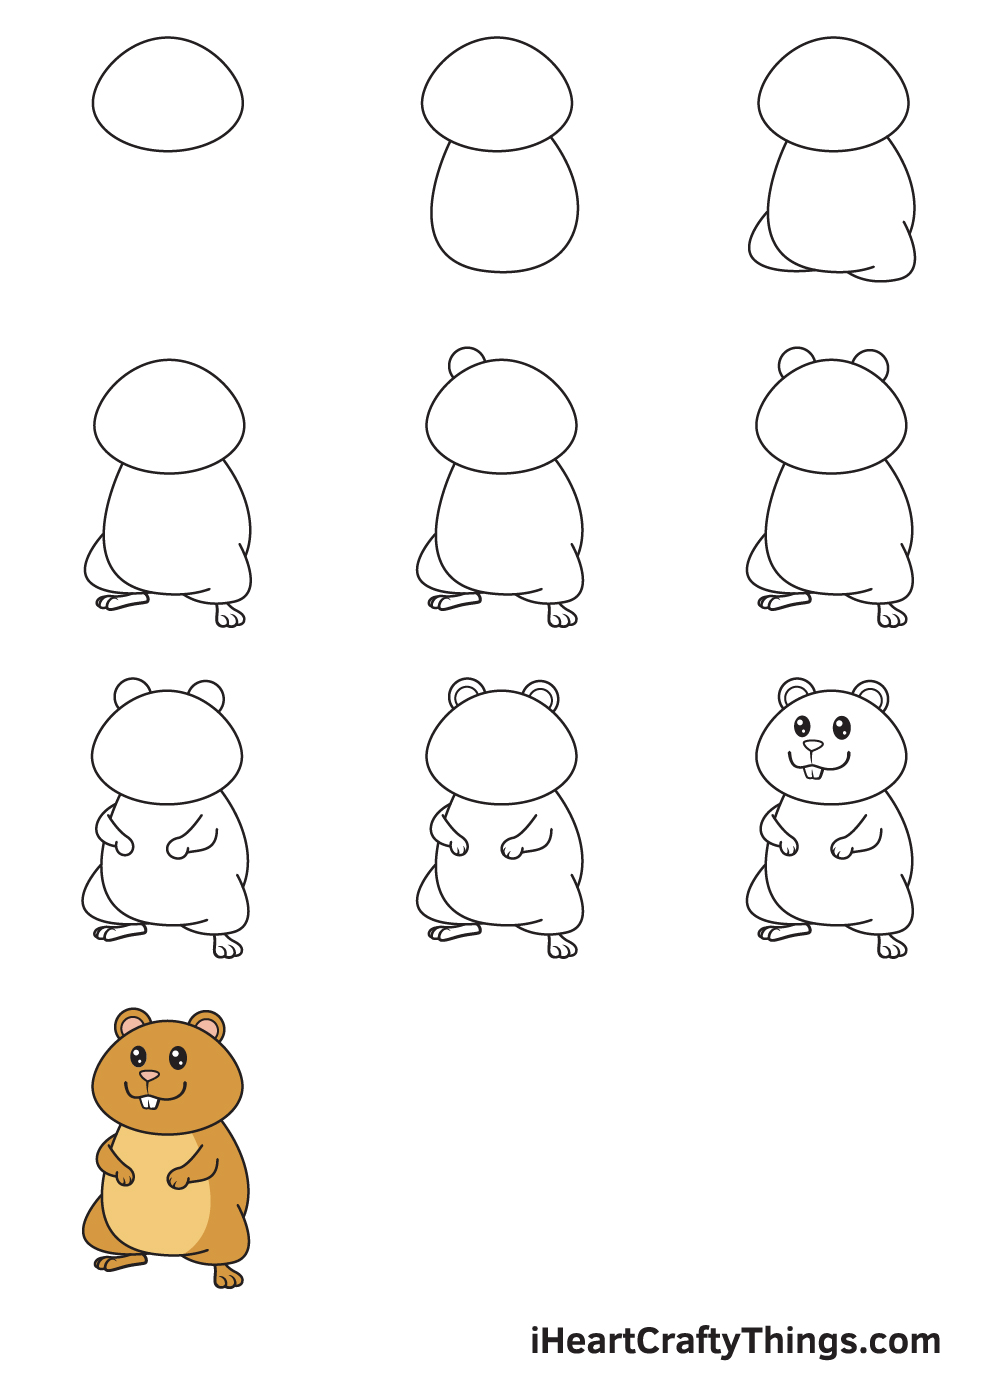 Drawing Hamster in 10 Easy Steps - Hướng dẫn cách vẽ con chuột hamster đơn giản với 9 bước cơ bản